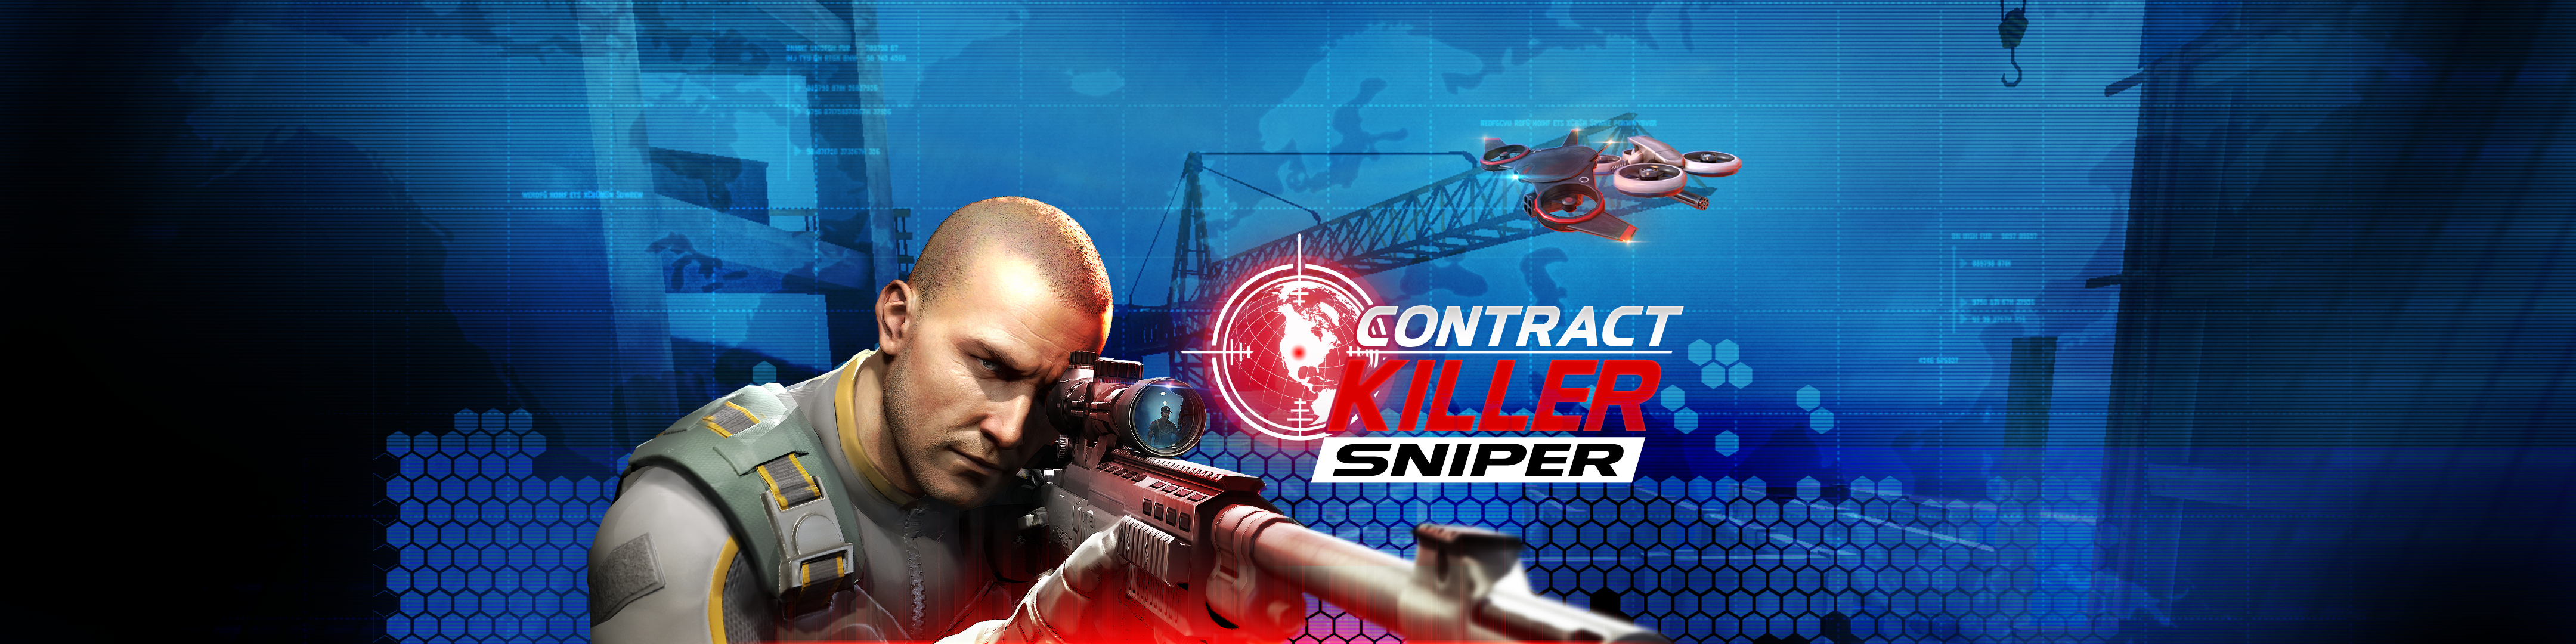 contract killer sniper drone upgrades